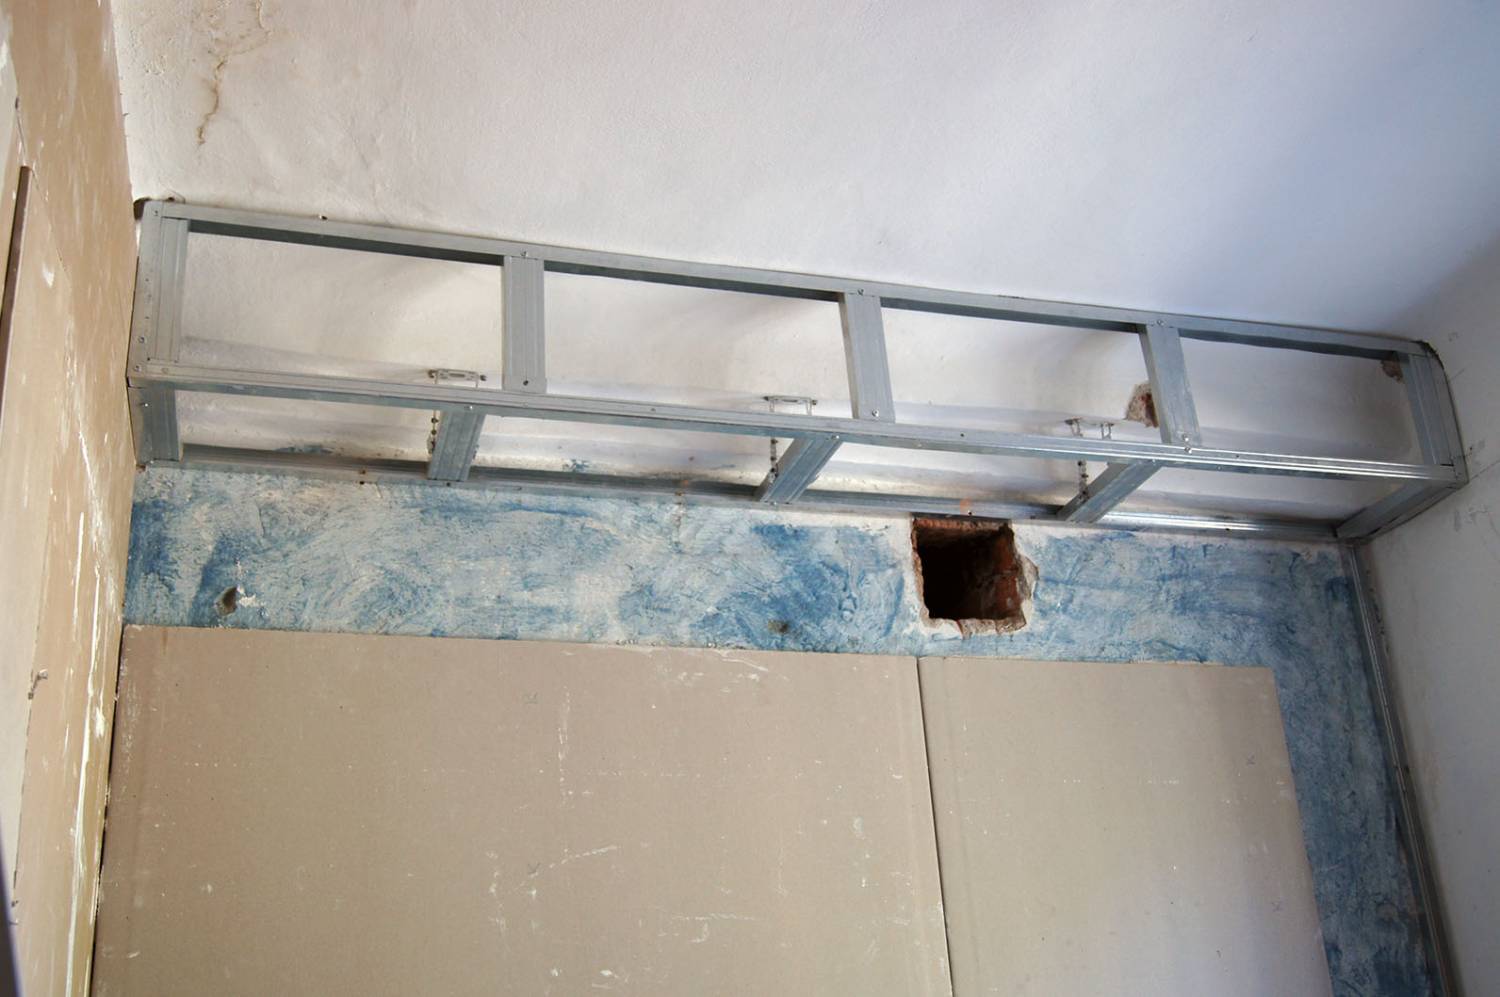 Потолок в ванной из гипсокартона: правильный монтаж | gipsportal
потолки в ванной из гипсокартона, подготовка и монтаж — gipsportal